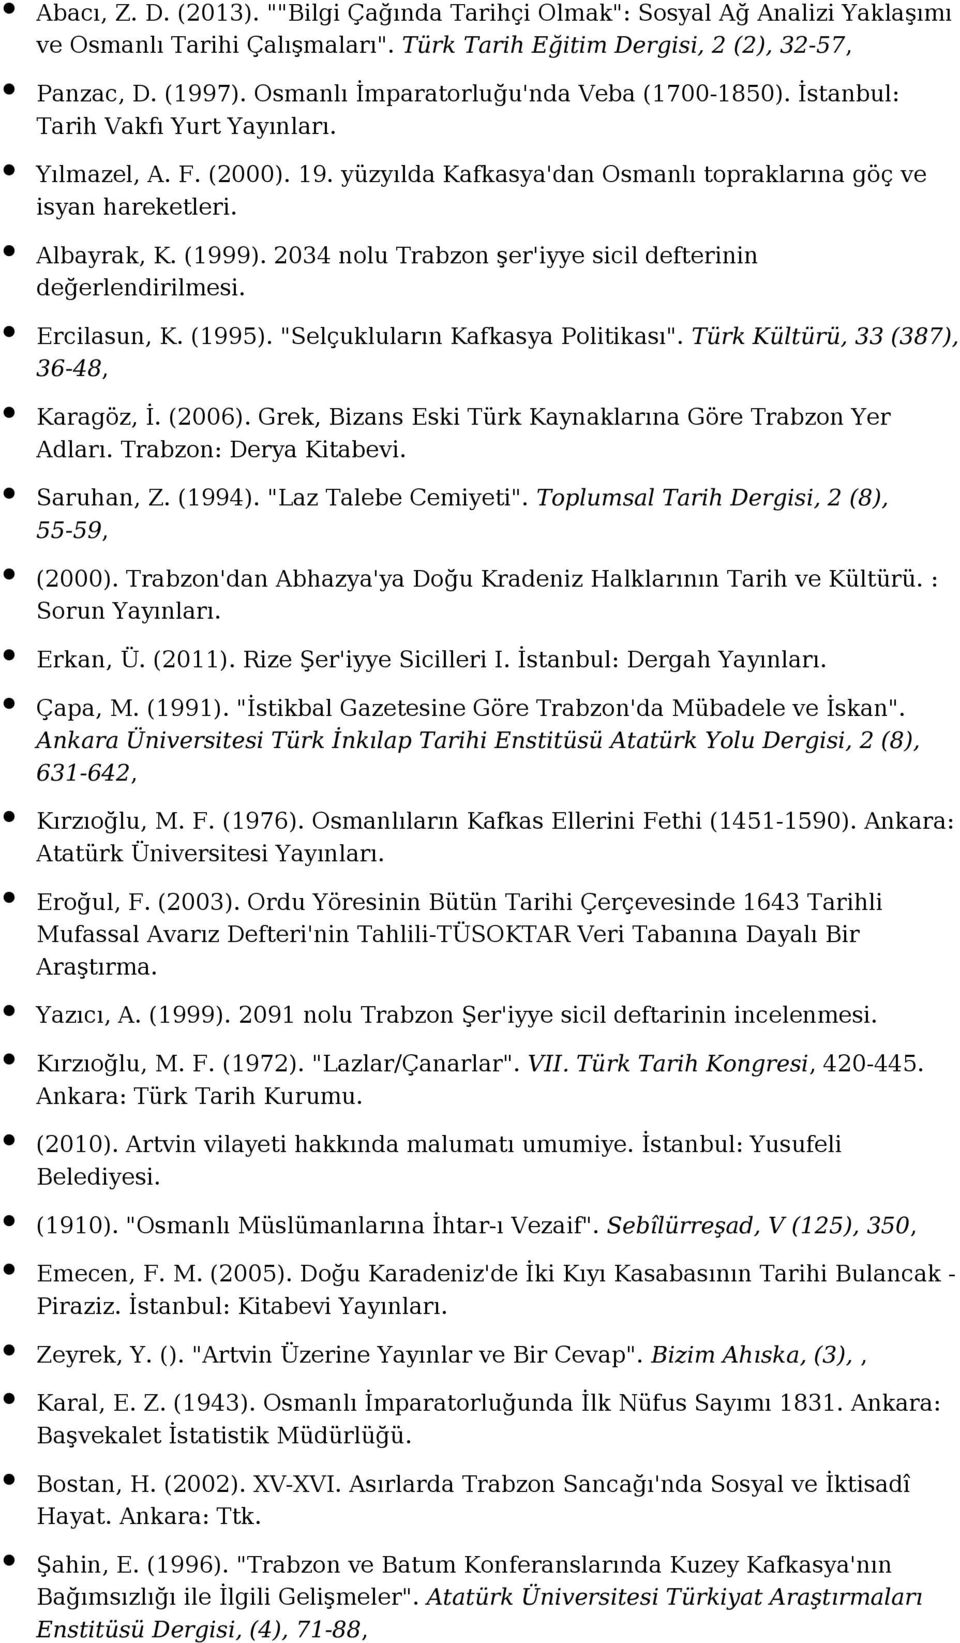 2034 nolu Trabzon şer'iyye sicil defterinin değerlendirilmesi. Ercilasun, K. (1995). "Selçukluların Kafkasya Politikası". Türk Kültürü, 33 (387), 36-48, Karagöz, İ. (2006).